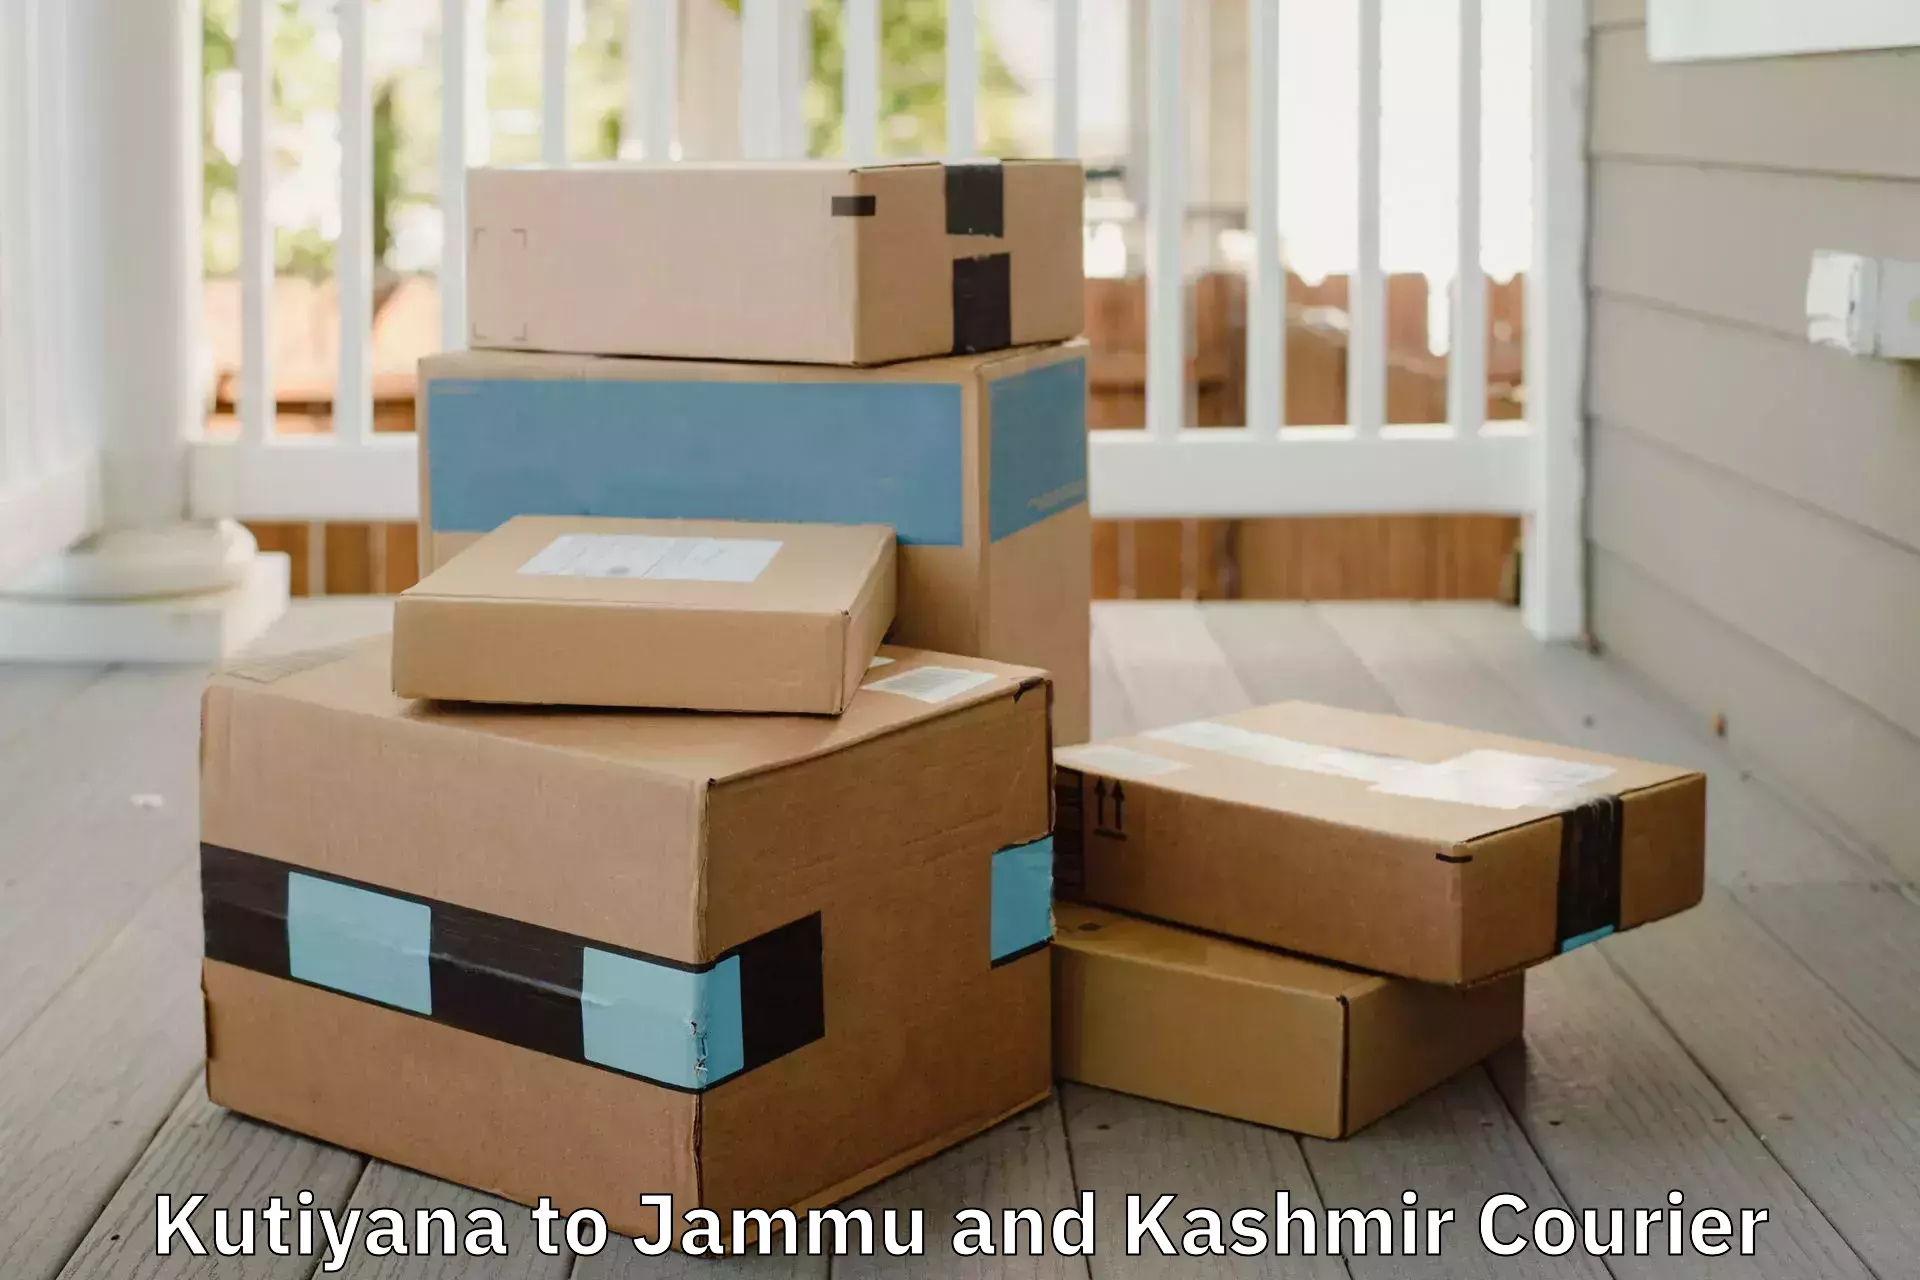 Reliable moving solutions Kutiyana to Jammu and Kashmir